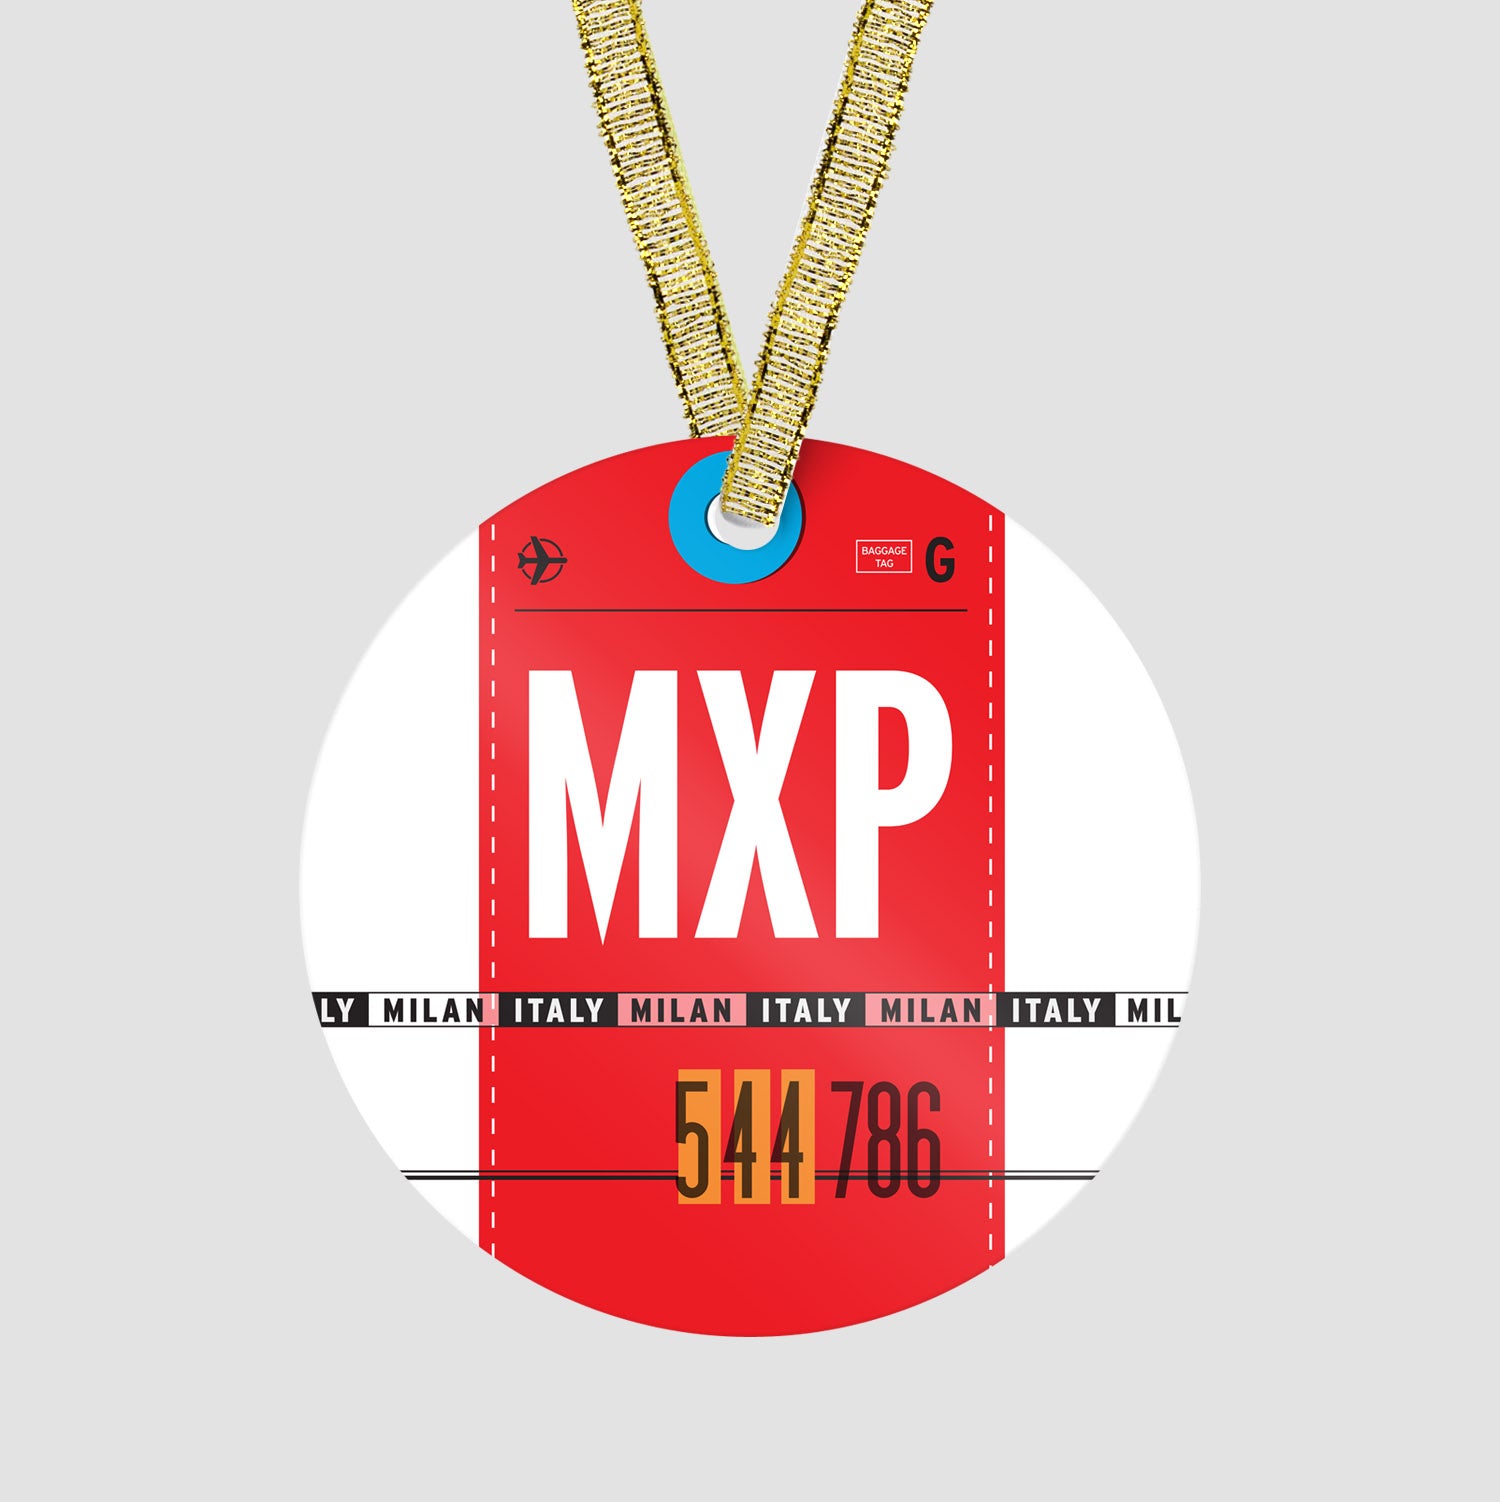 MXP - Ornament - Airportag